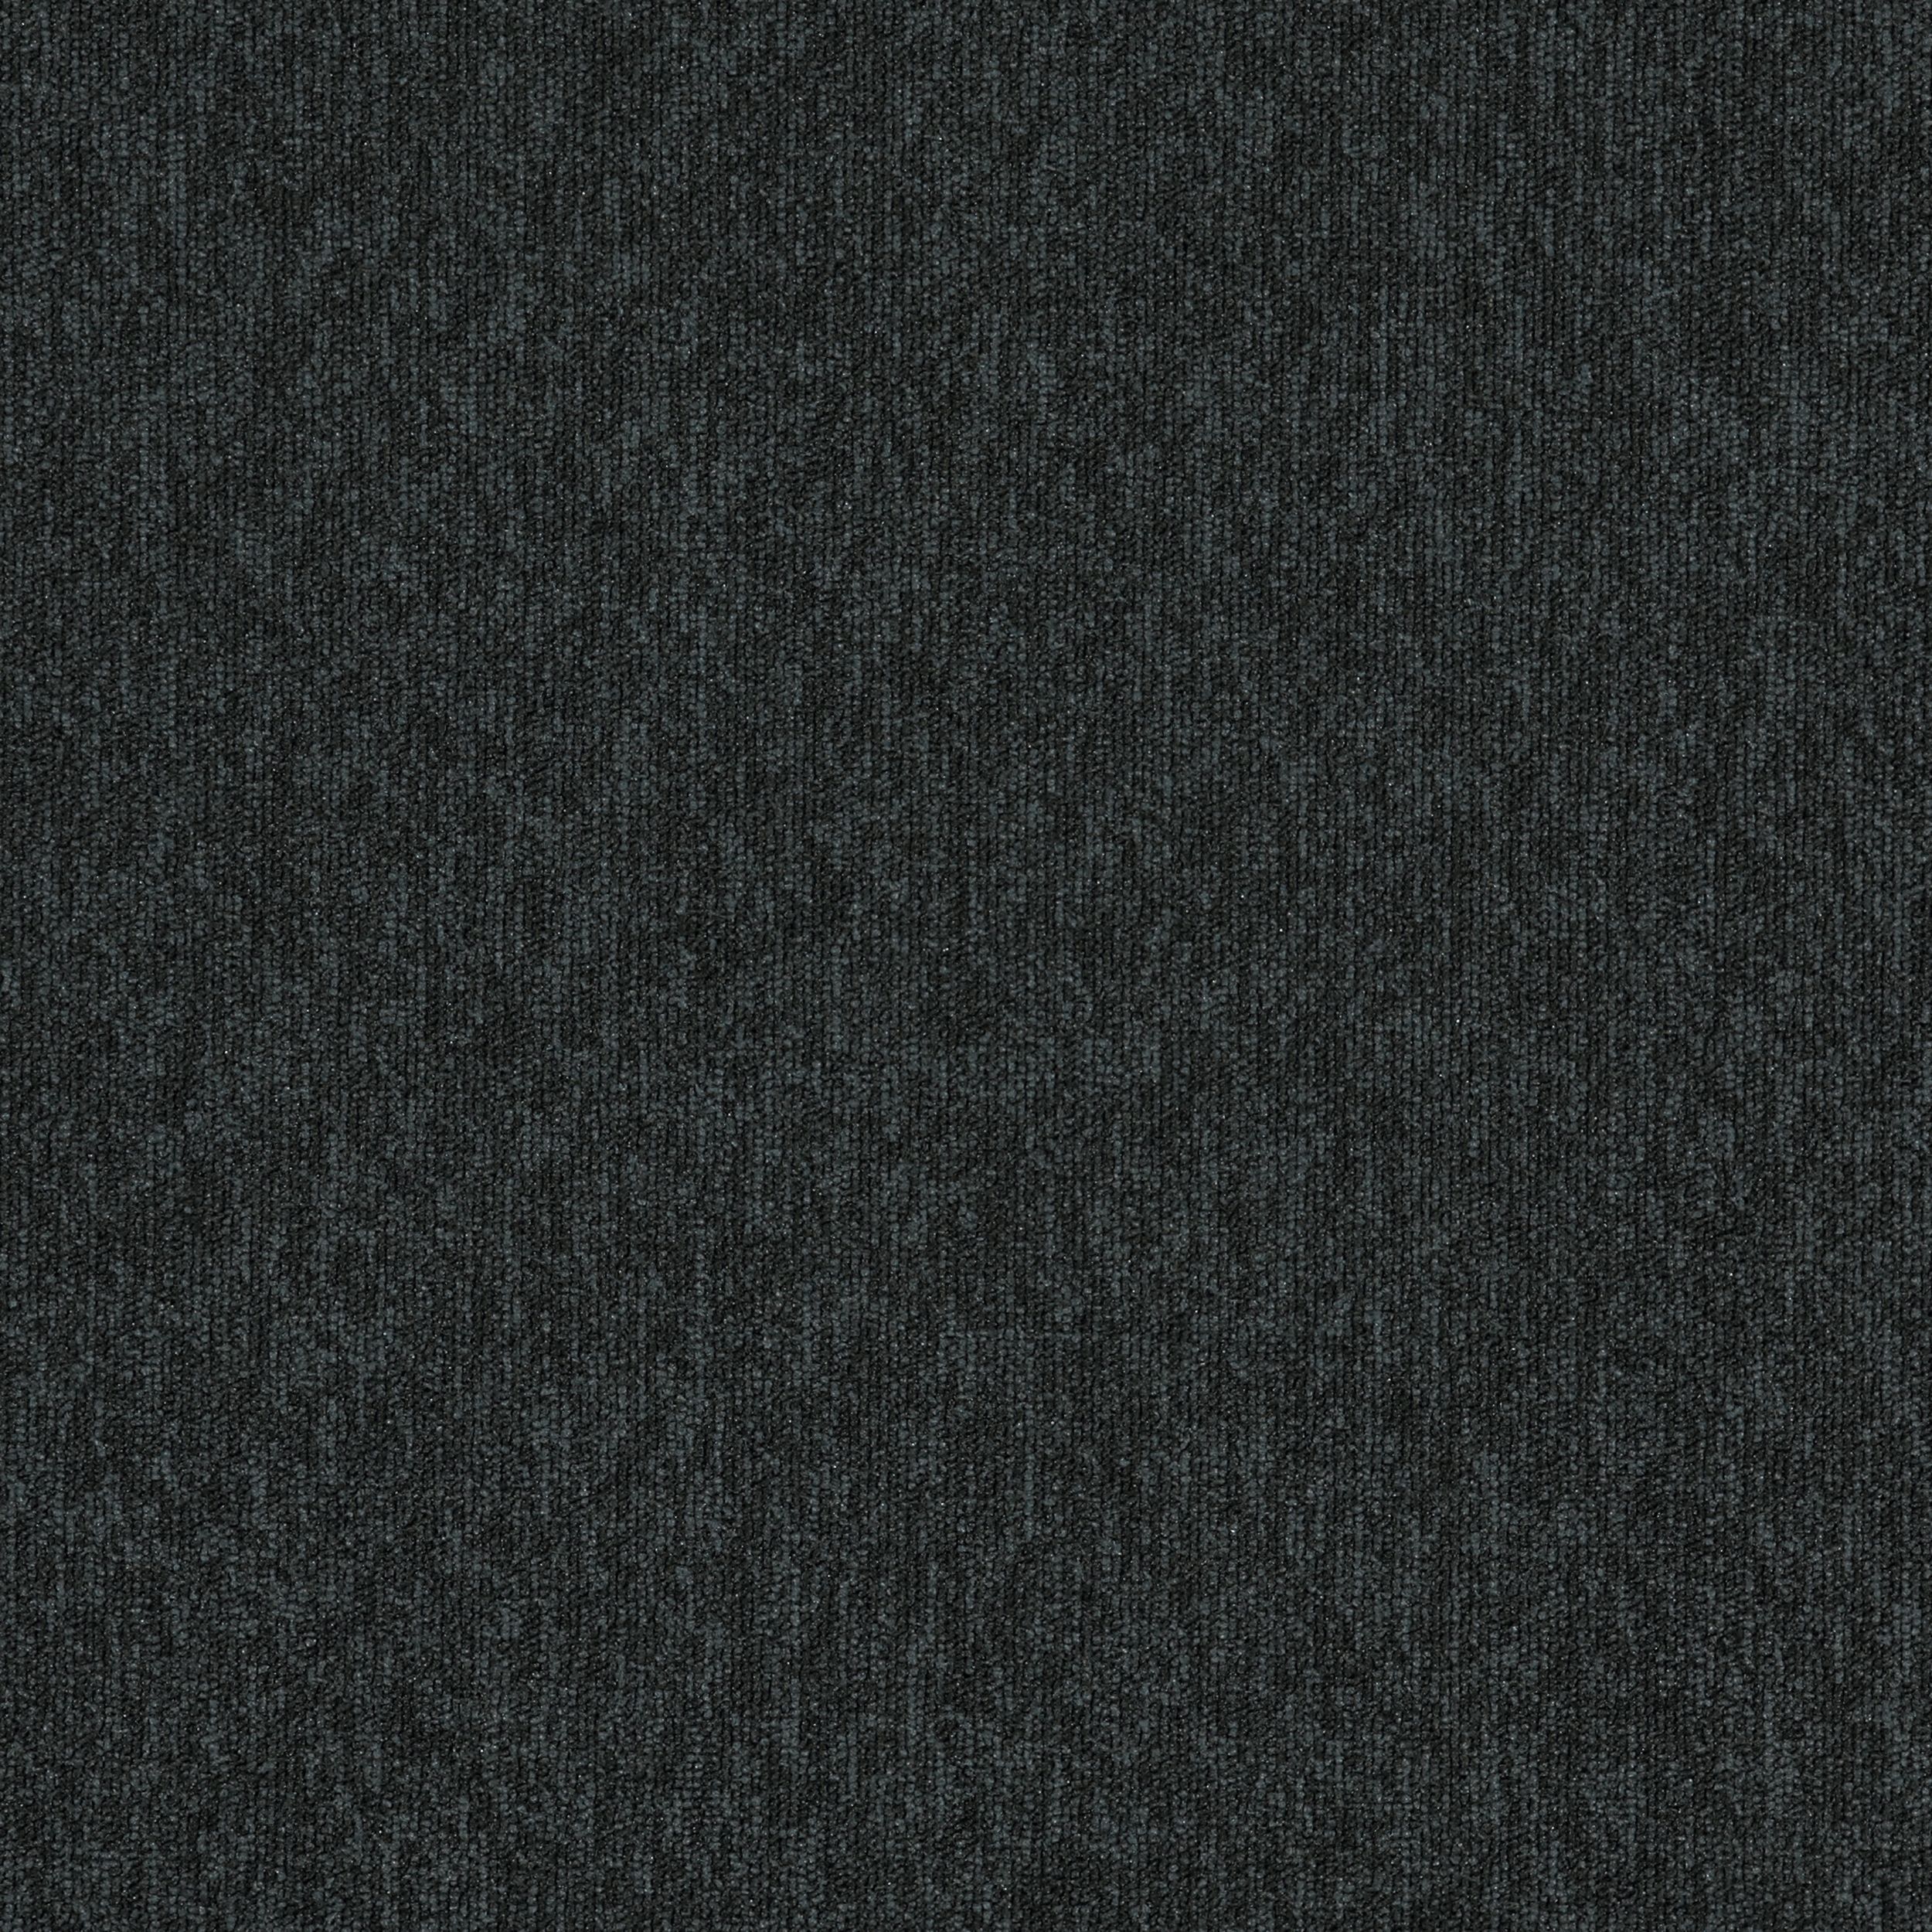 New Horizons II Carpet Tile In Carbon Bildnummer 2